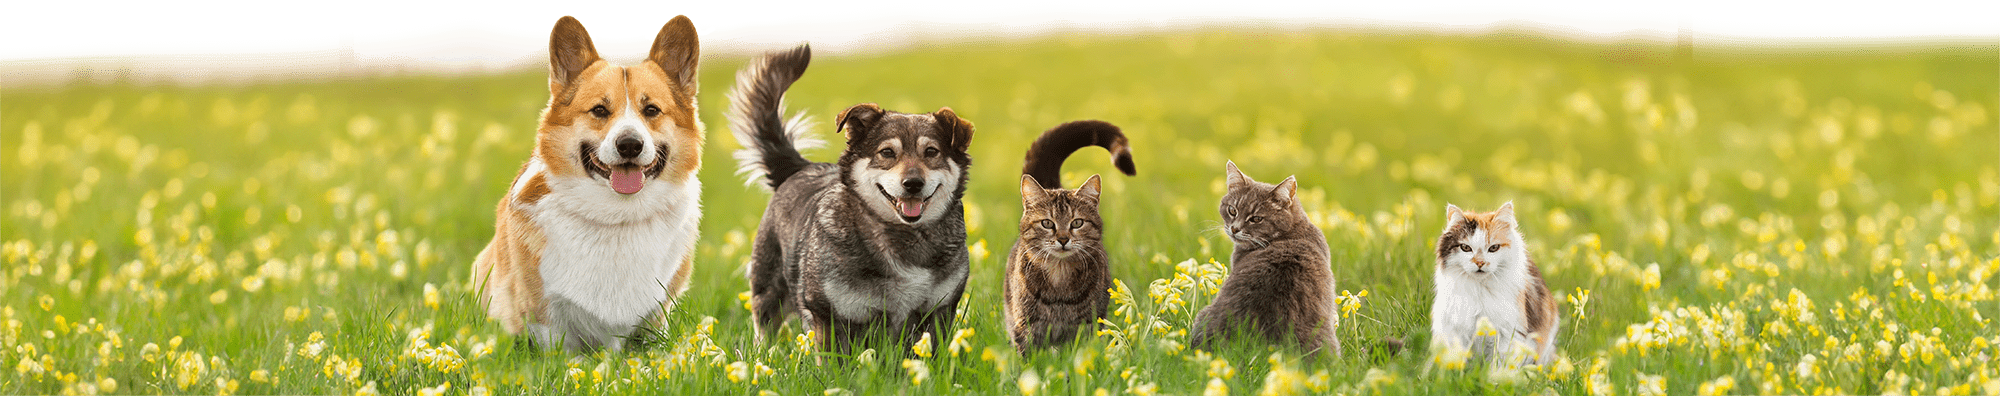 DA Direkt TKV Frühlingskampagne - 2 Hunde und 3 Katzen stehen auf einer Frühlingswiese